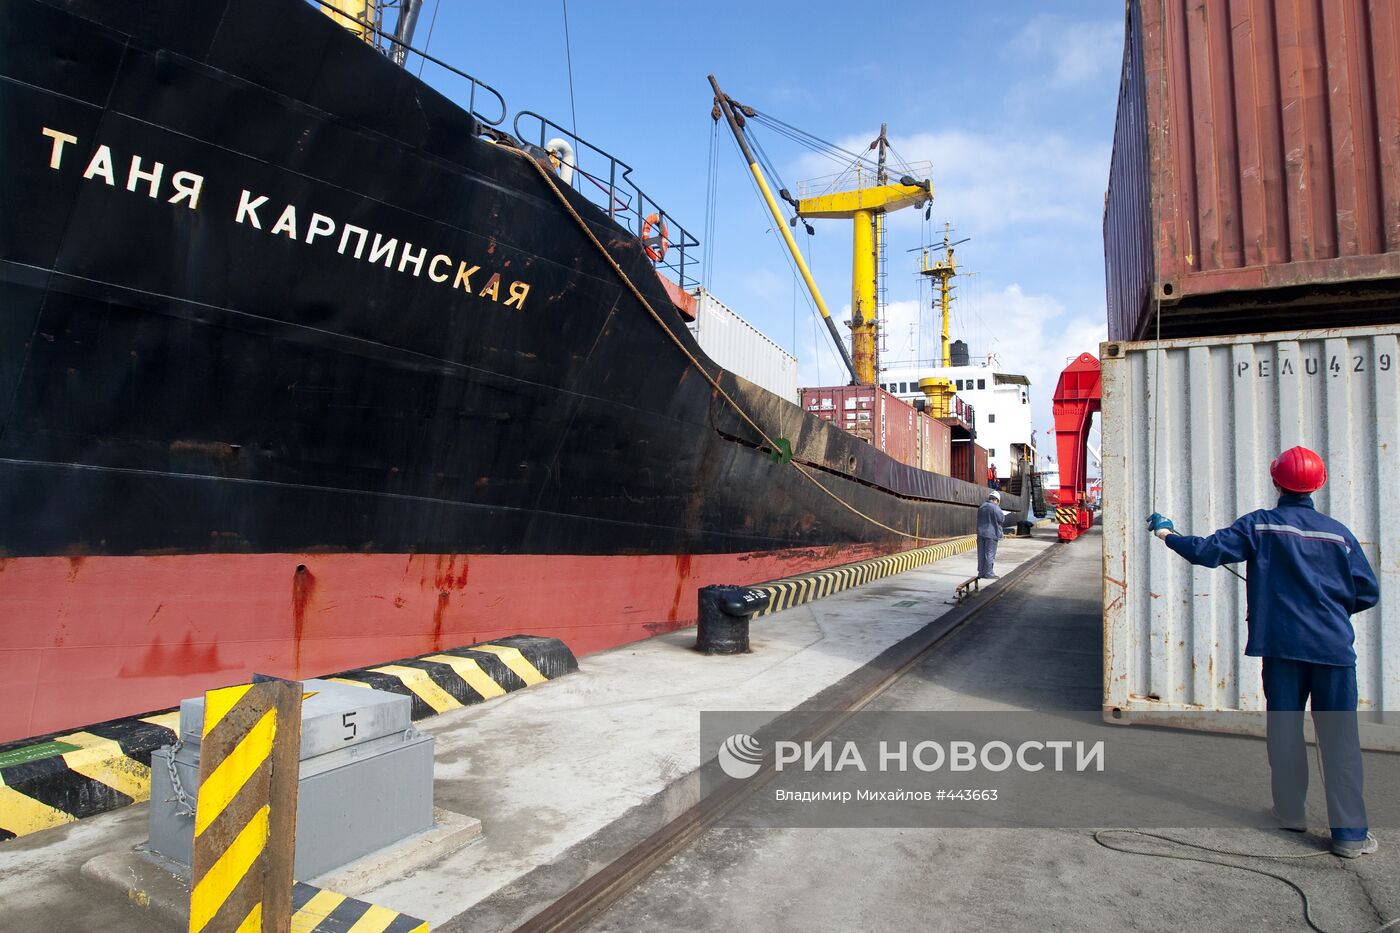 Работа Сахалинского западного морского порта в Холмске